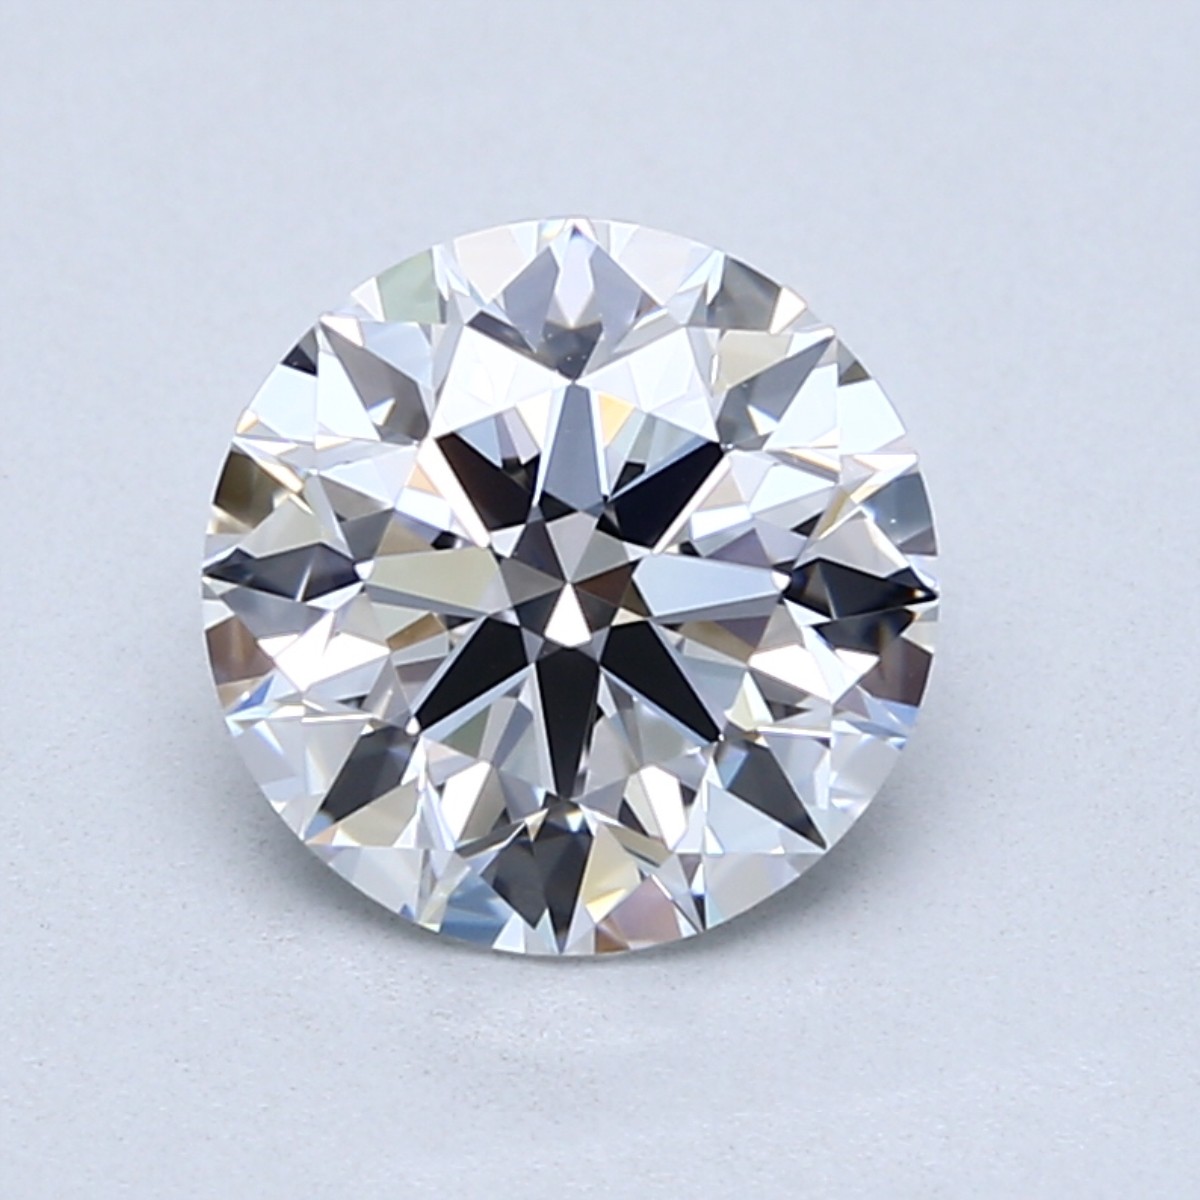 2 carat D color diamond